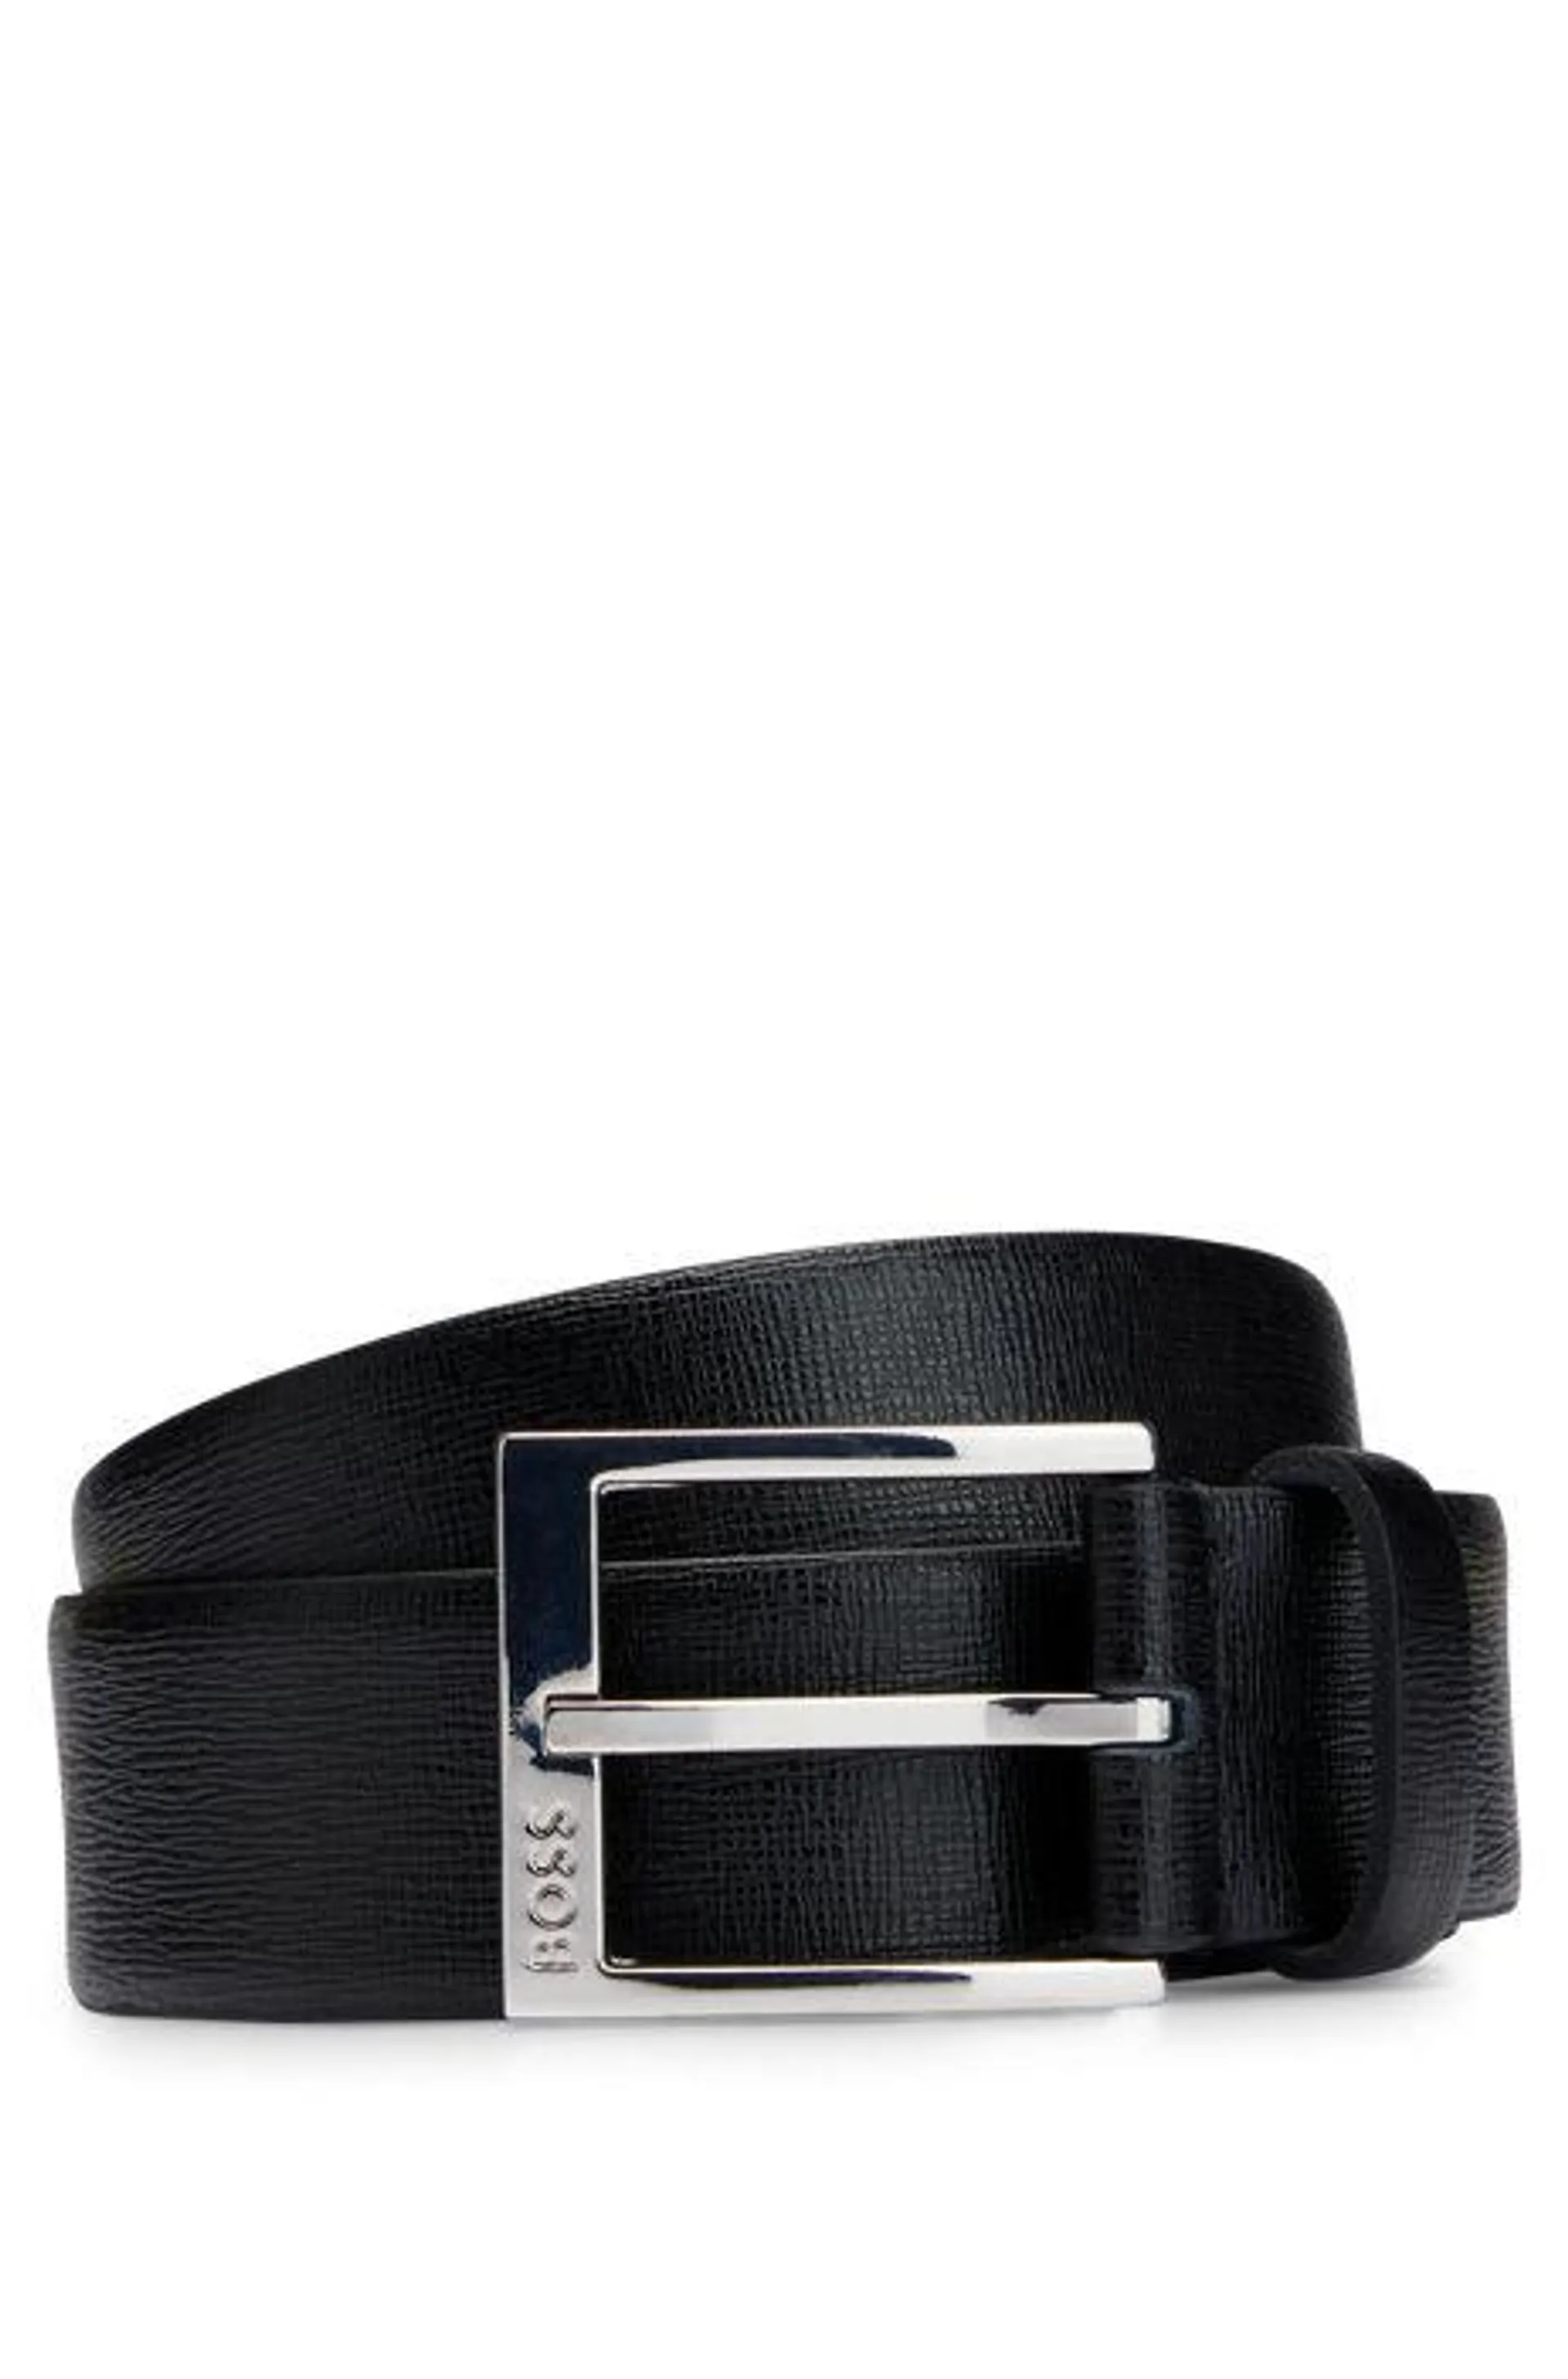 Cinturón de piel italiana con logo en la hebilla